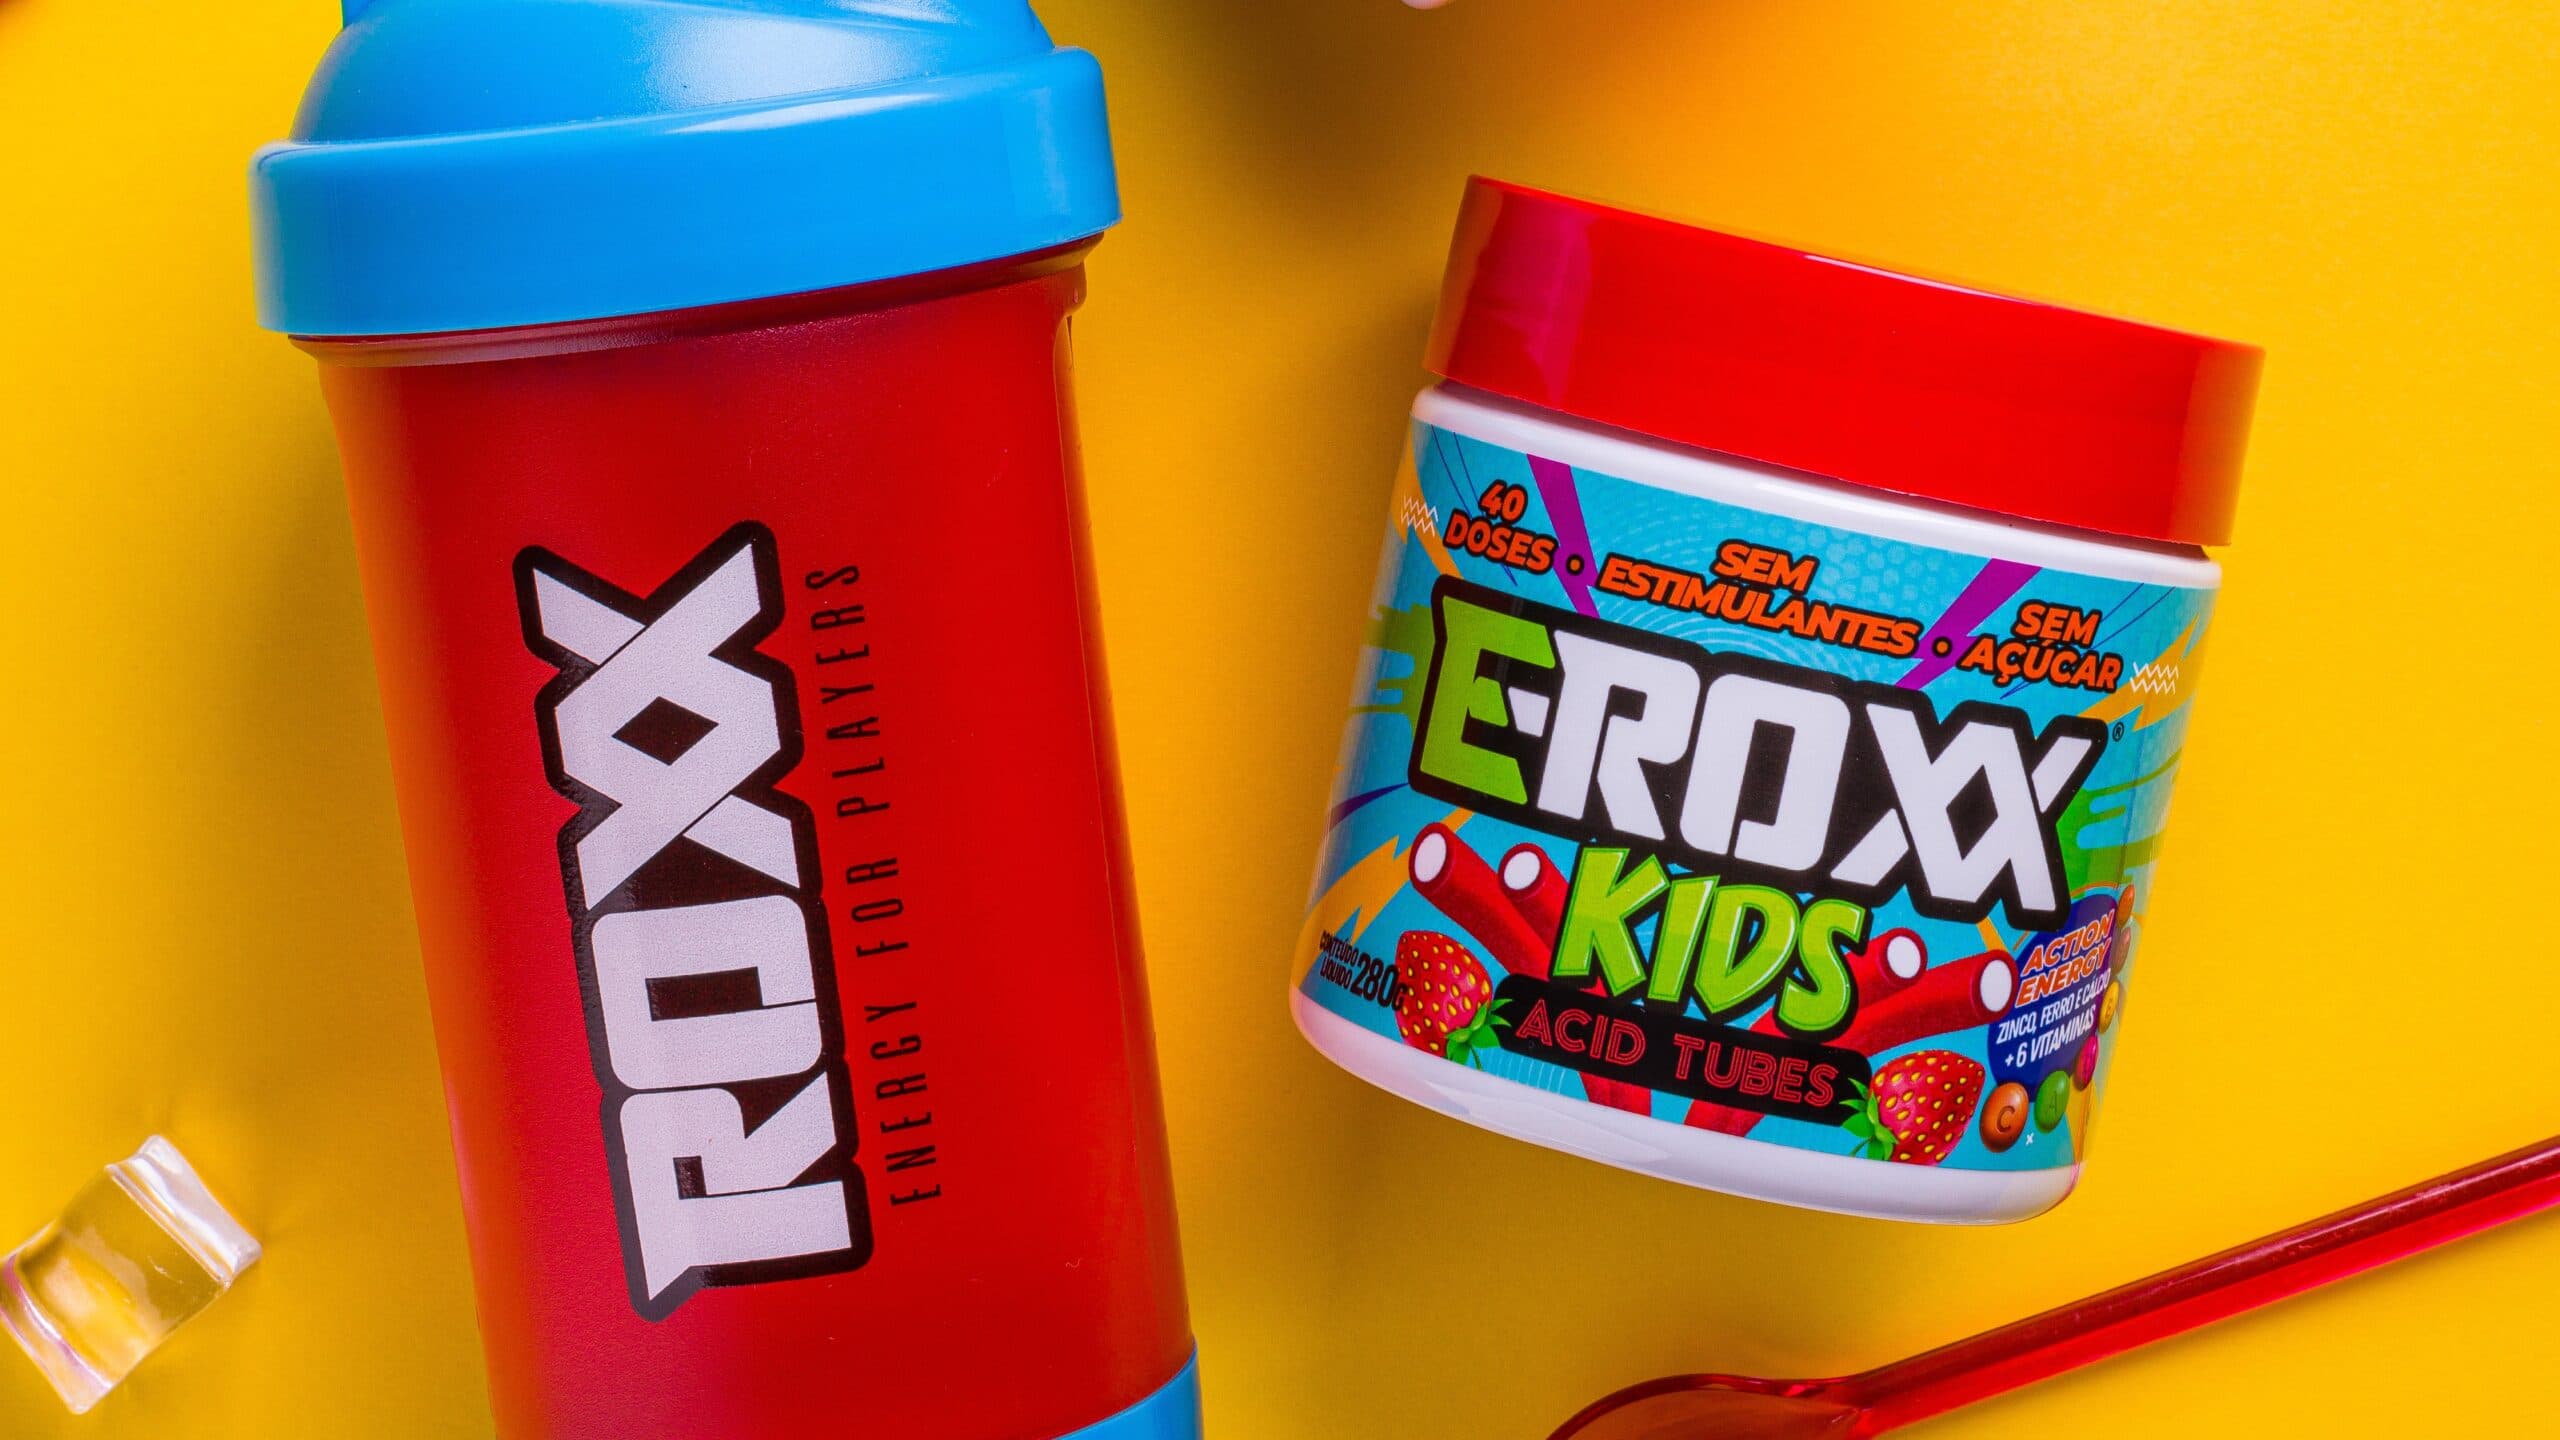 E-Roxx Kids Acid Tubes